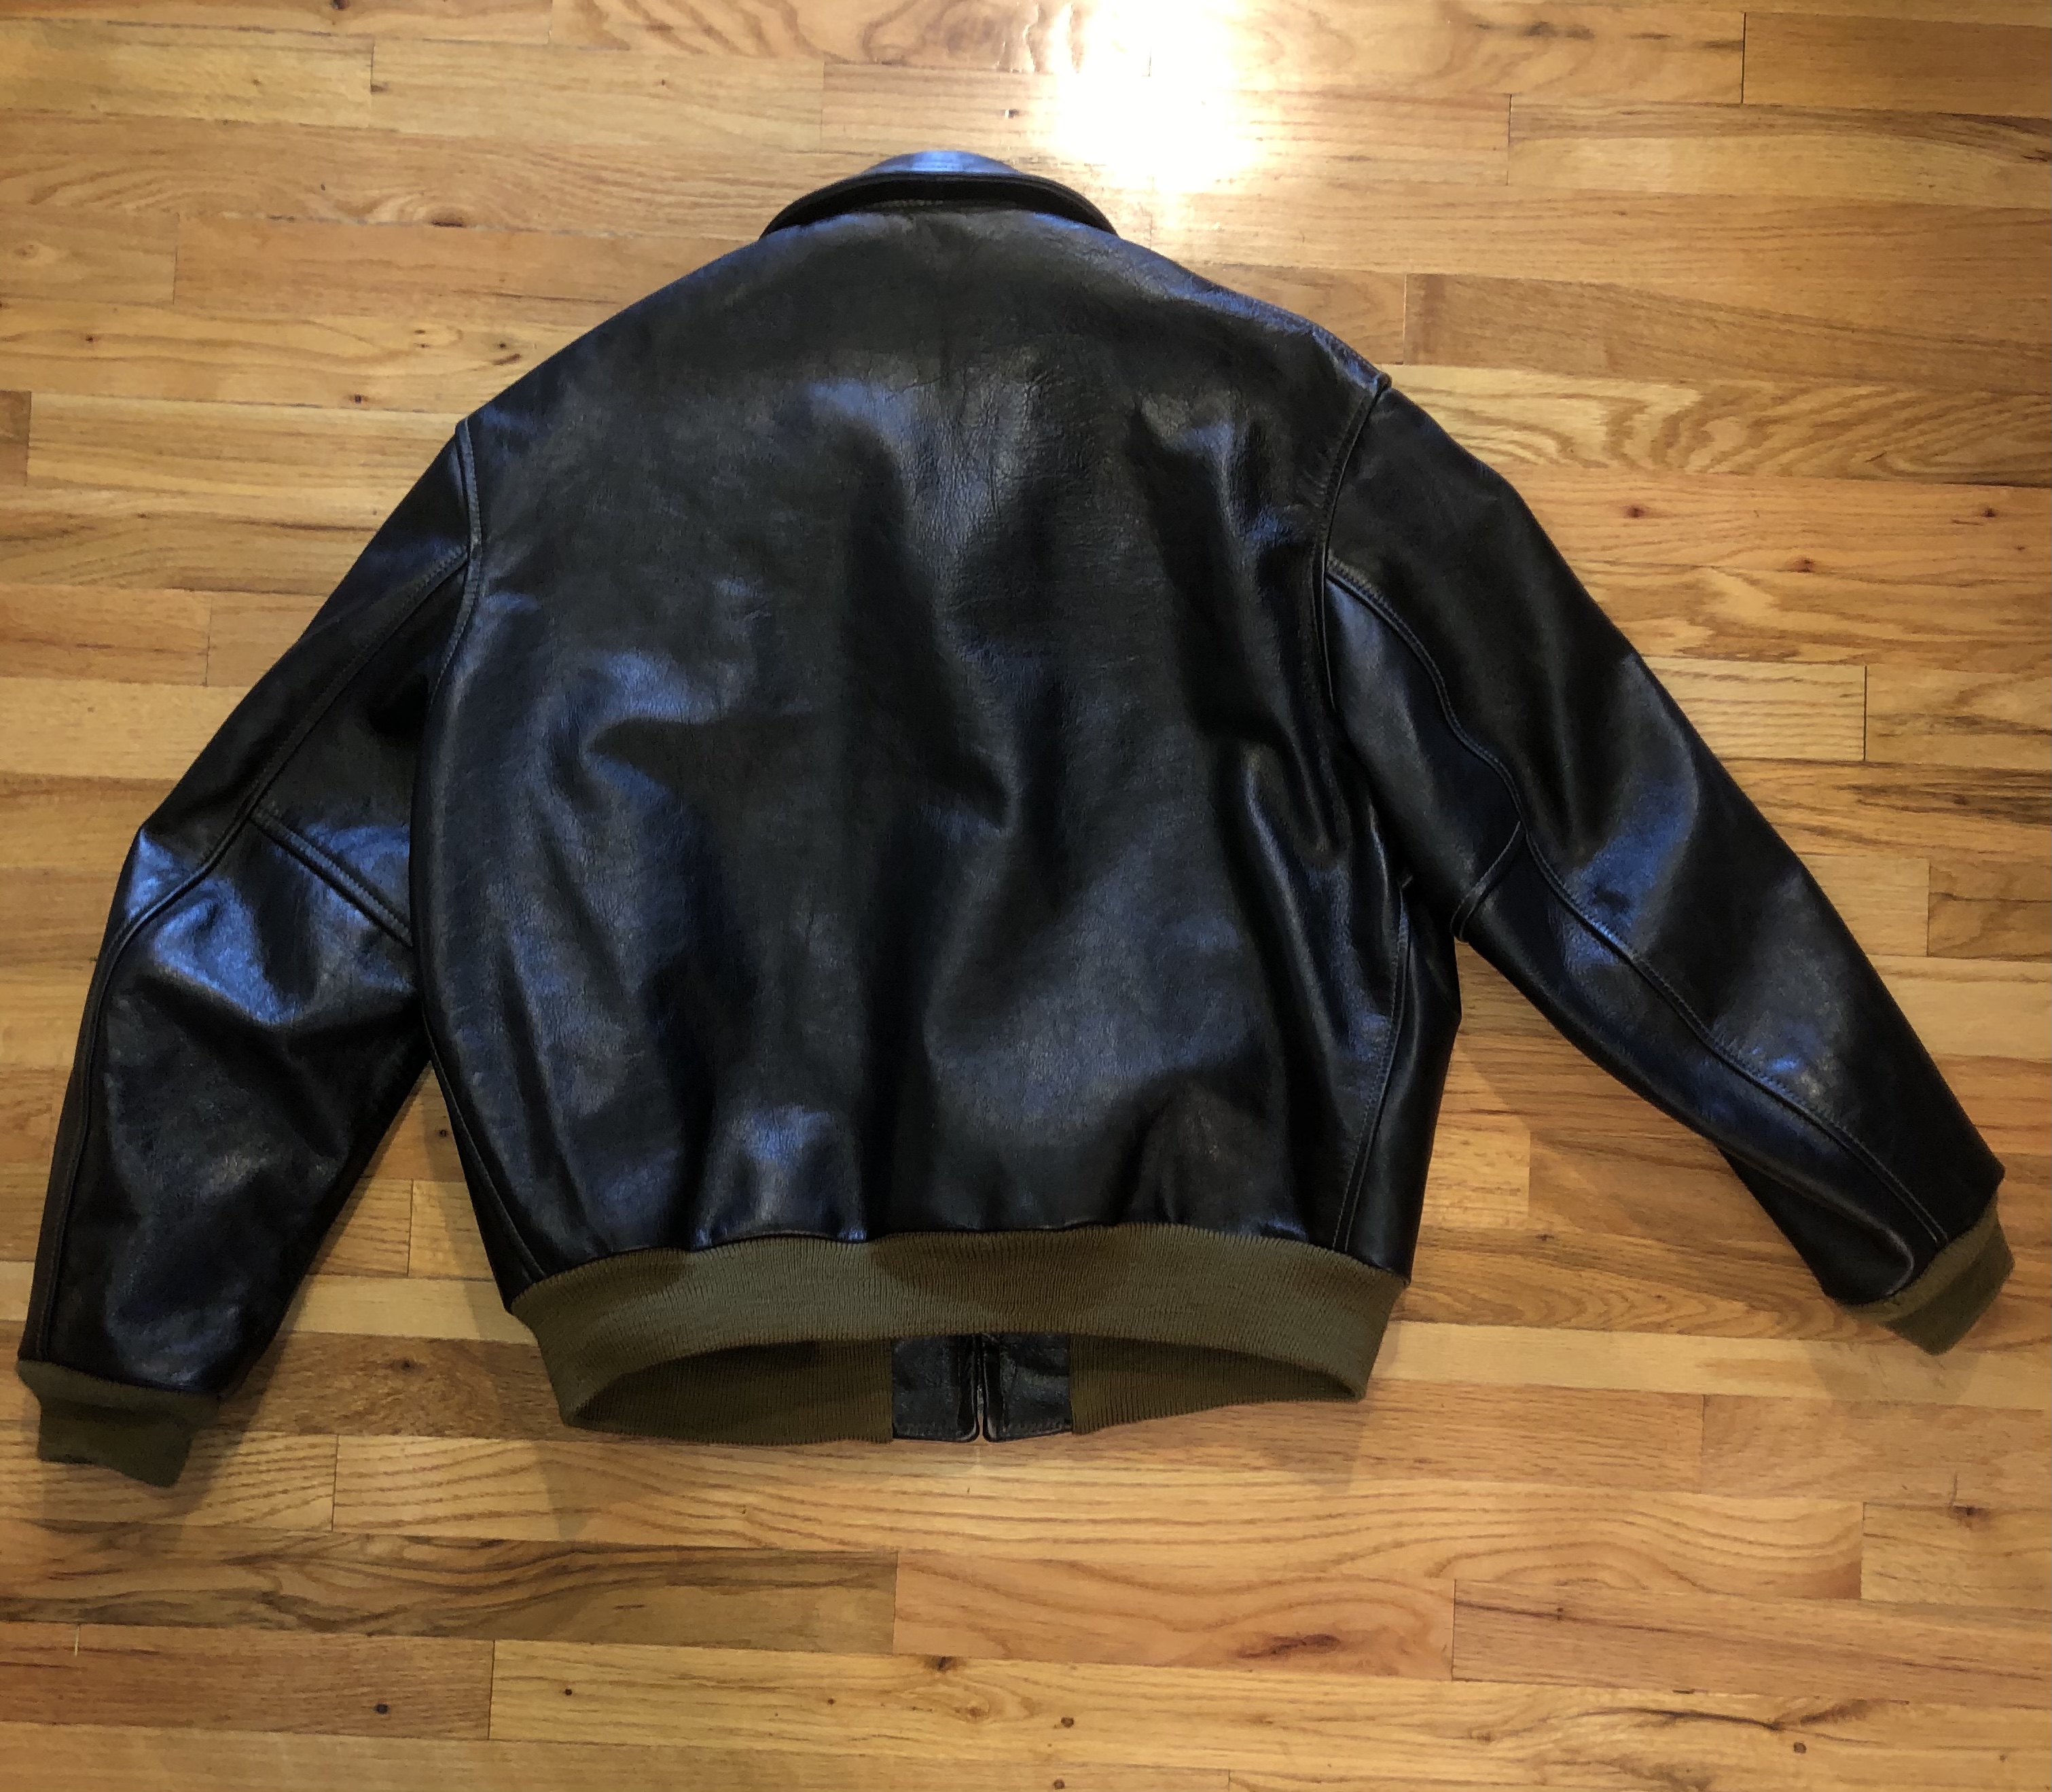 F/S Aero Happy Days Jacket size 48 Black Jerky Horsehide | The Fedora ...